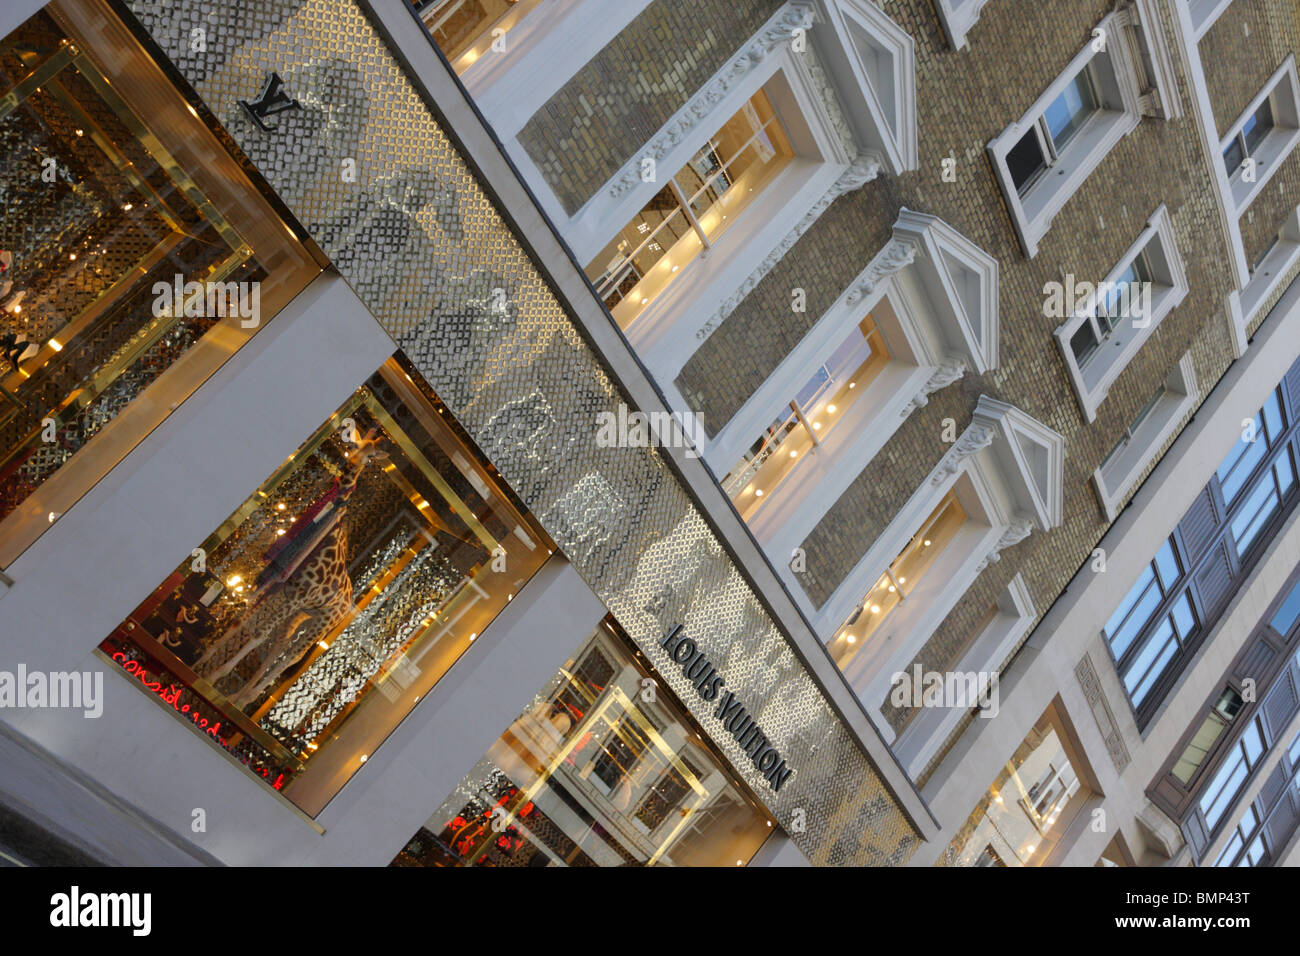 Louis Vuitton store – Stock Editorial Photo © teamtime #124429620